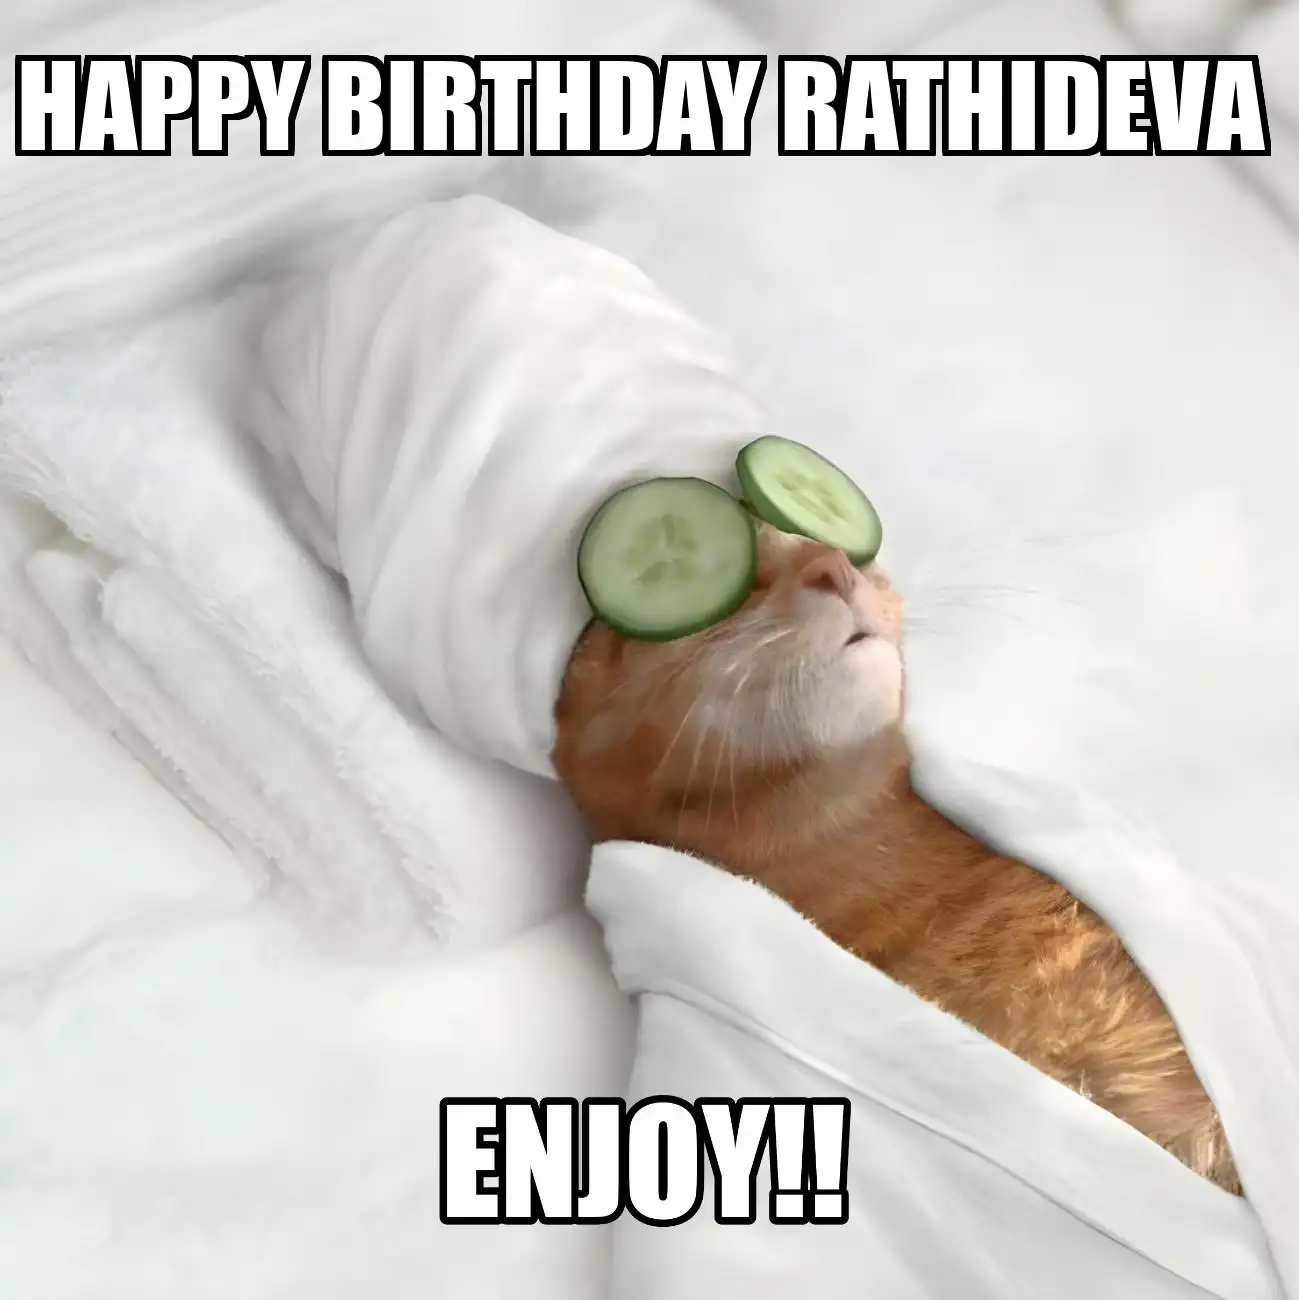 Happy Birthday Rathideva Enjoy Cat Meme